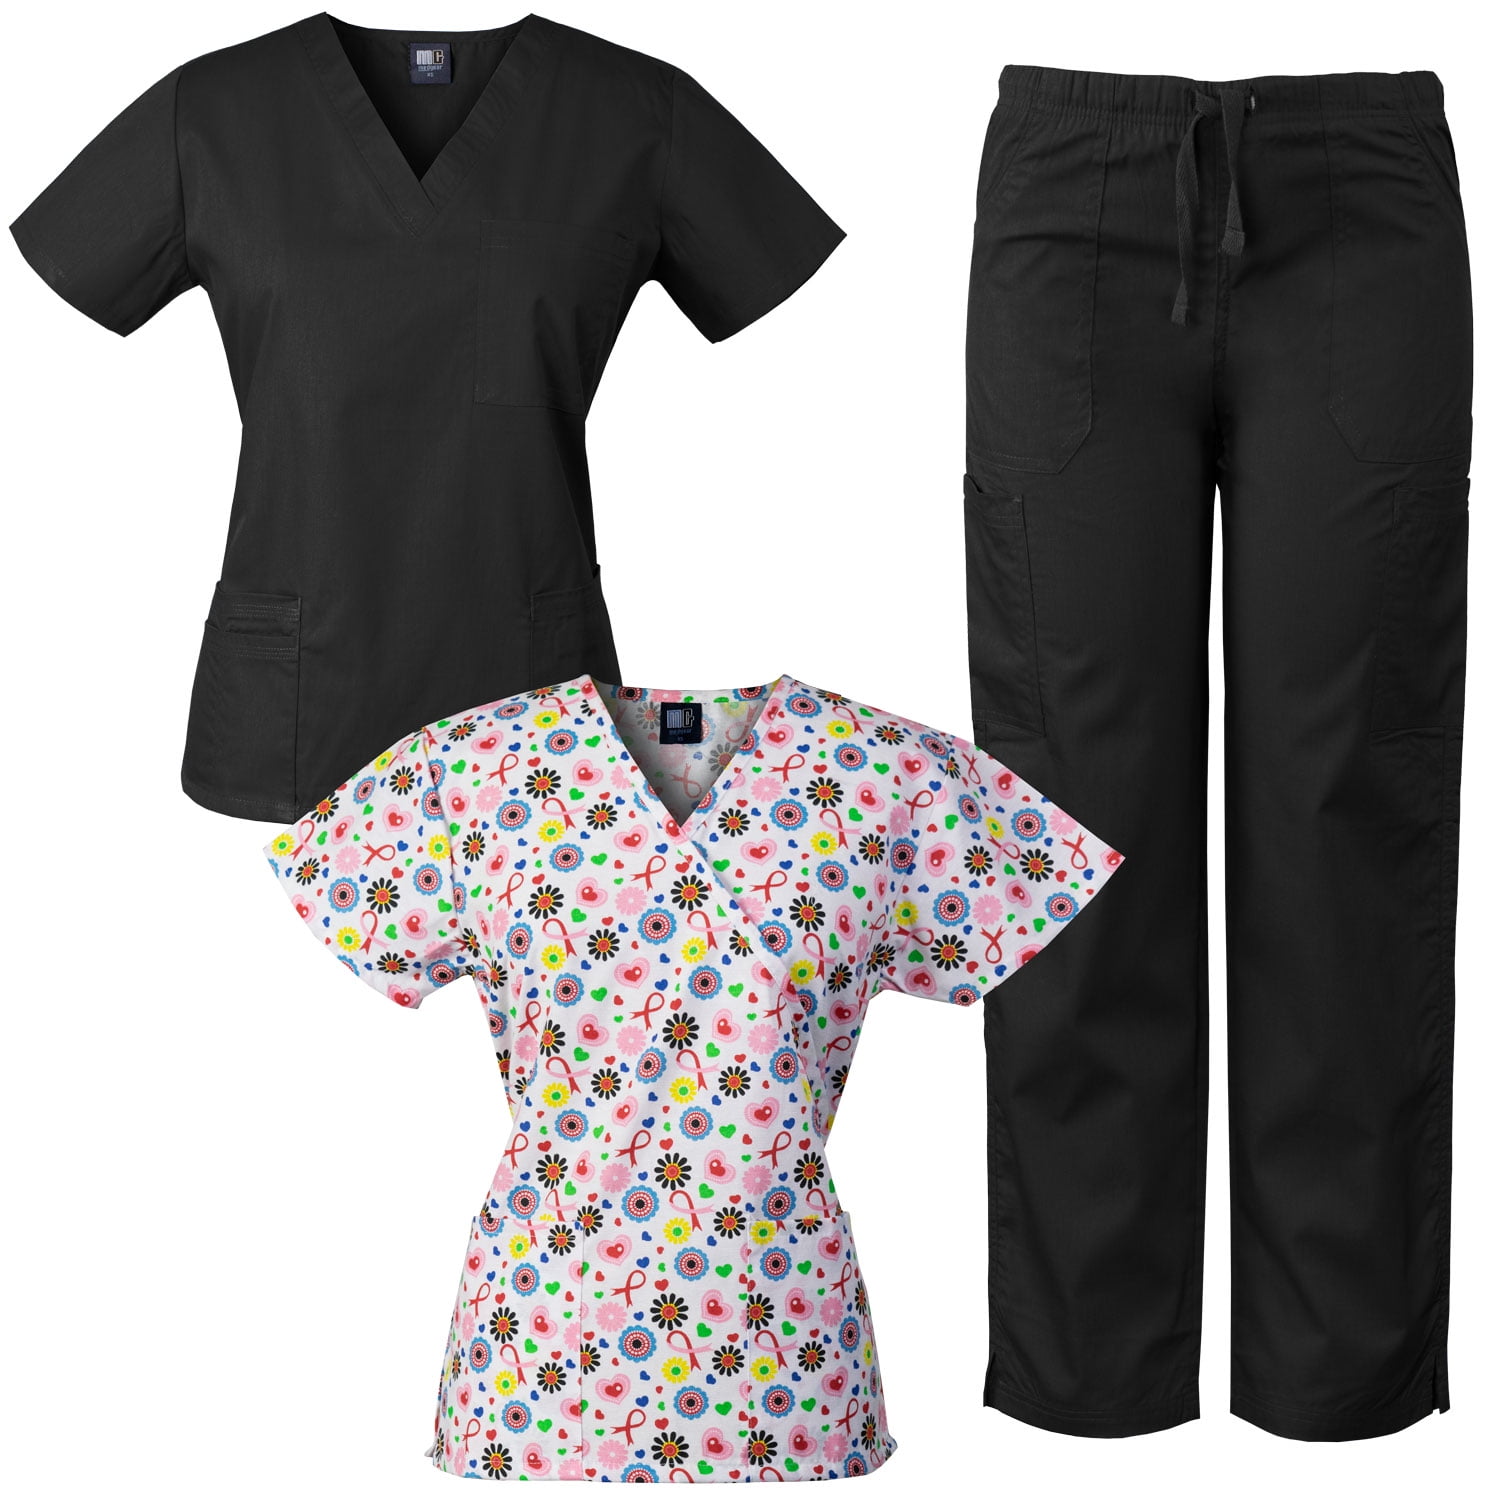 Download Medgear - Medgear Womens Scrub Set and Mock-Wrap Print Top Combo Medical Uniform - Walmart.com ...